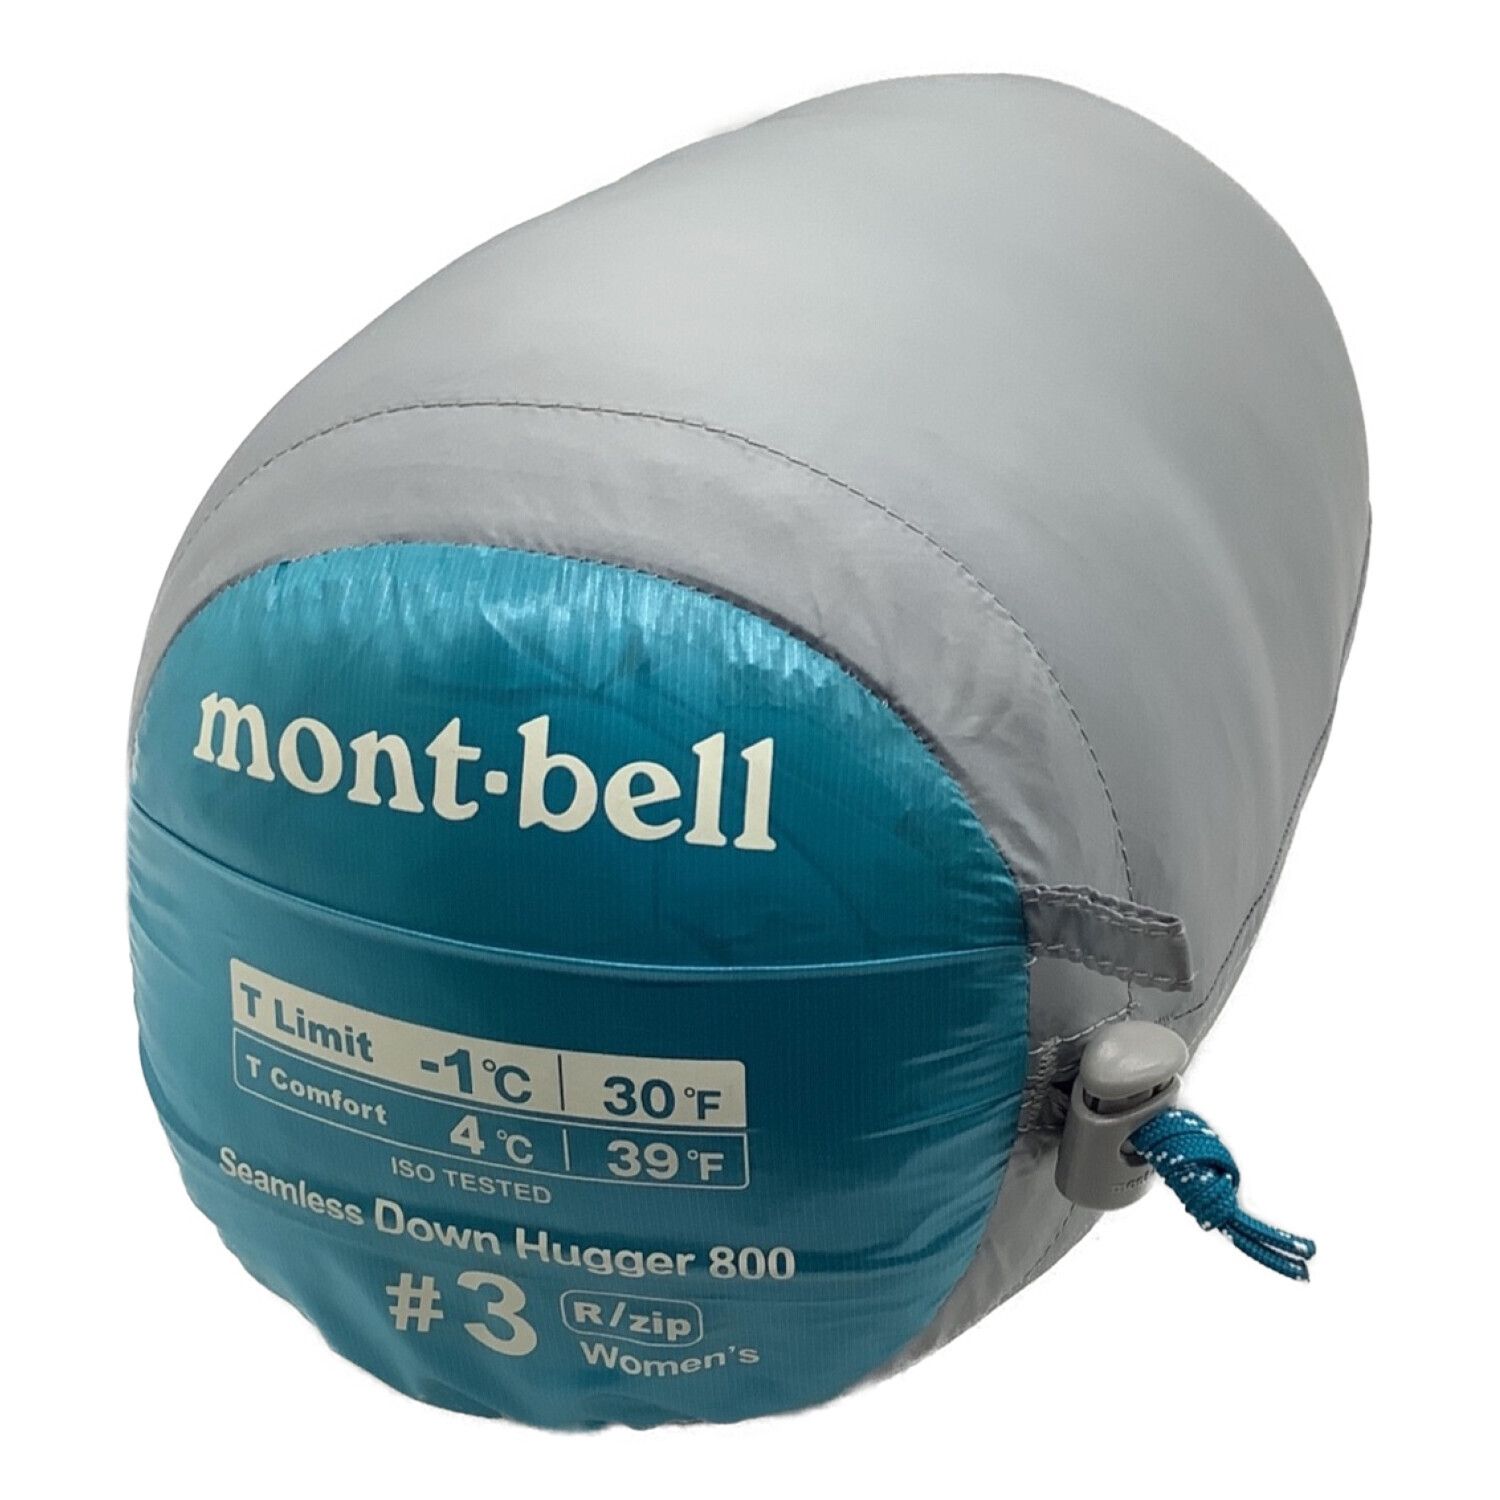 mont-bell (モンベル) マミー型シュラフ 女性用 1121414 ダウンハガー